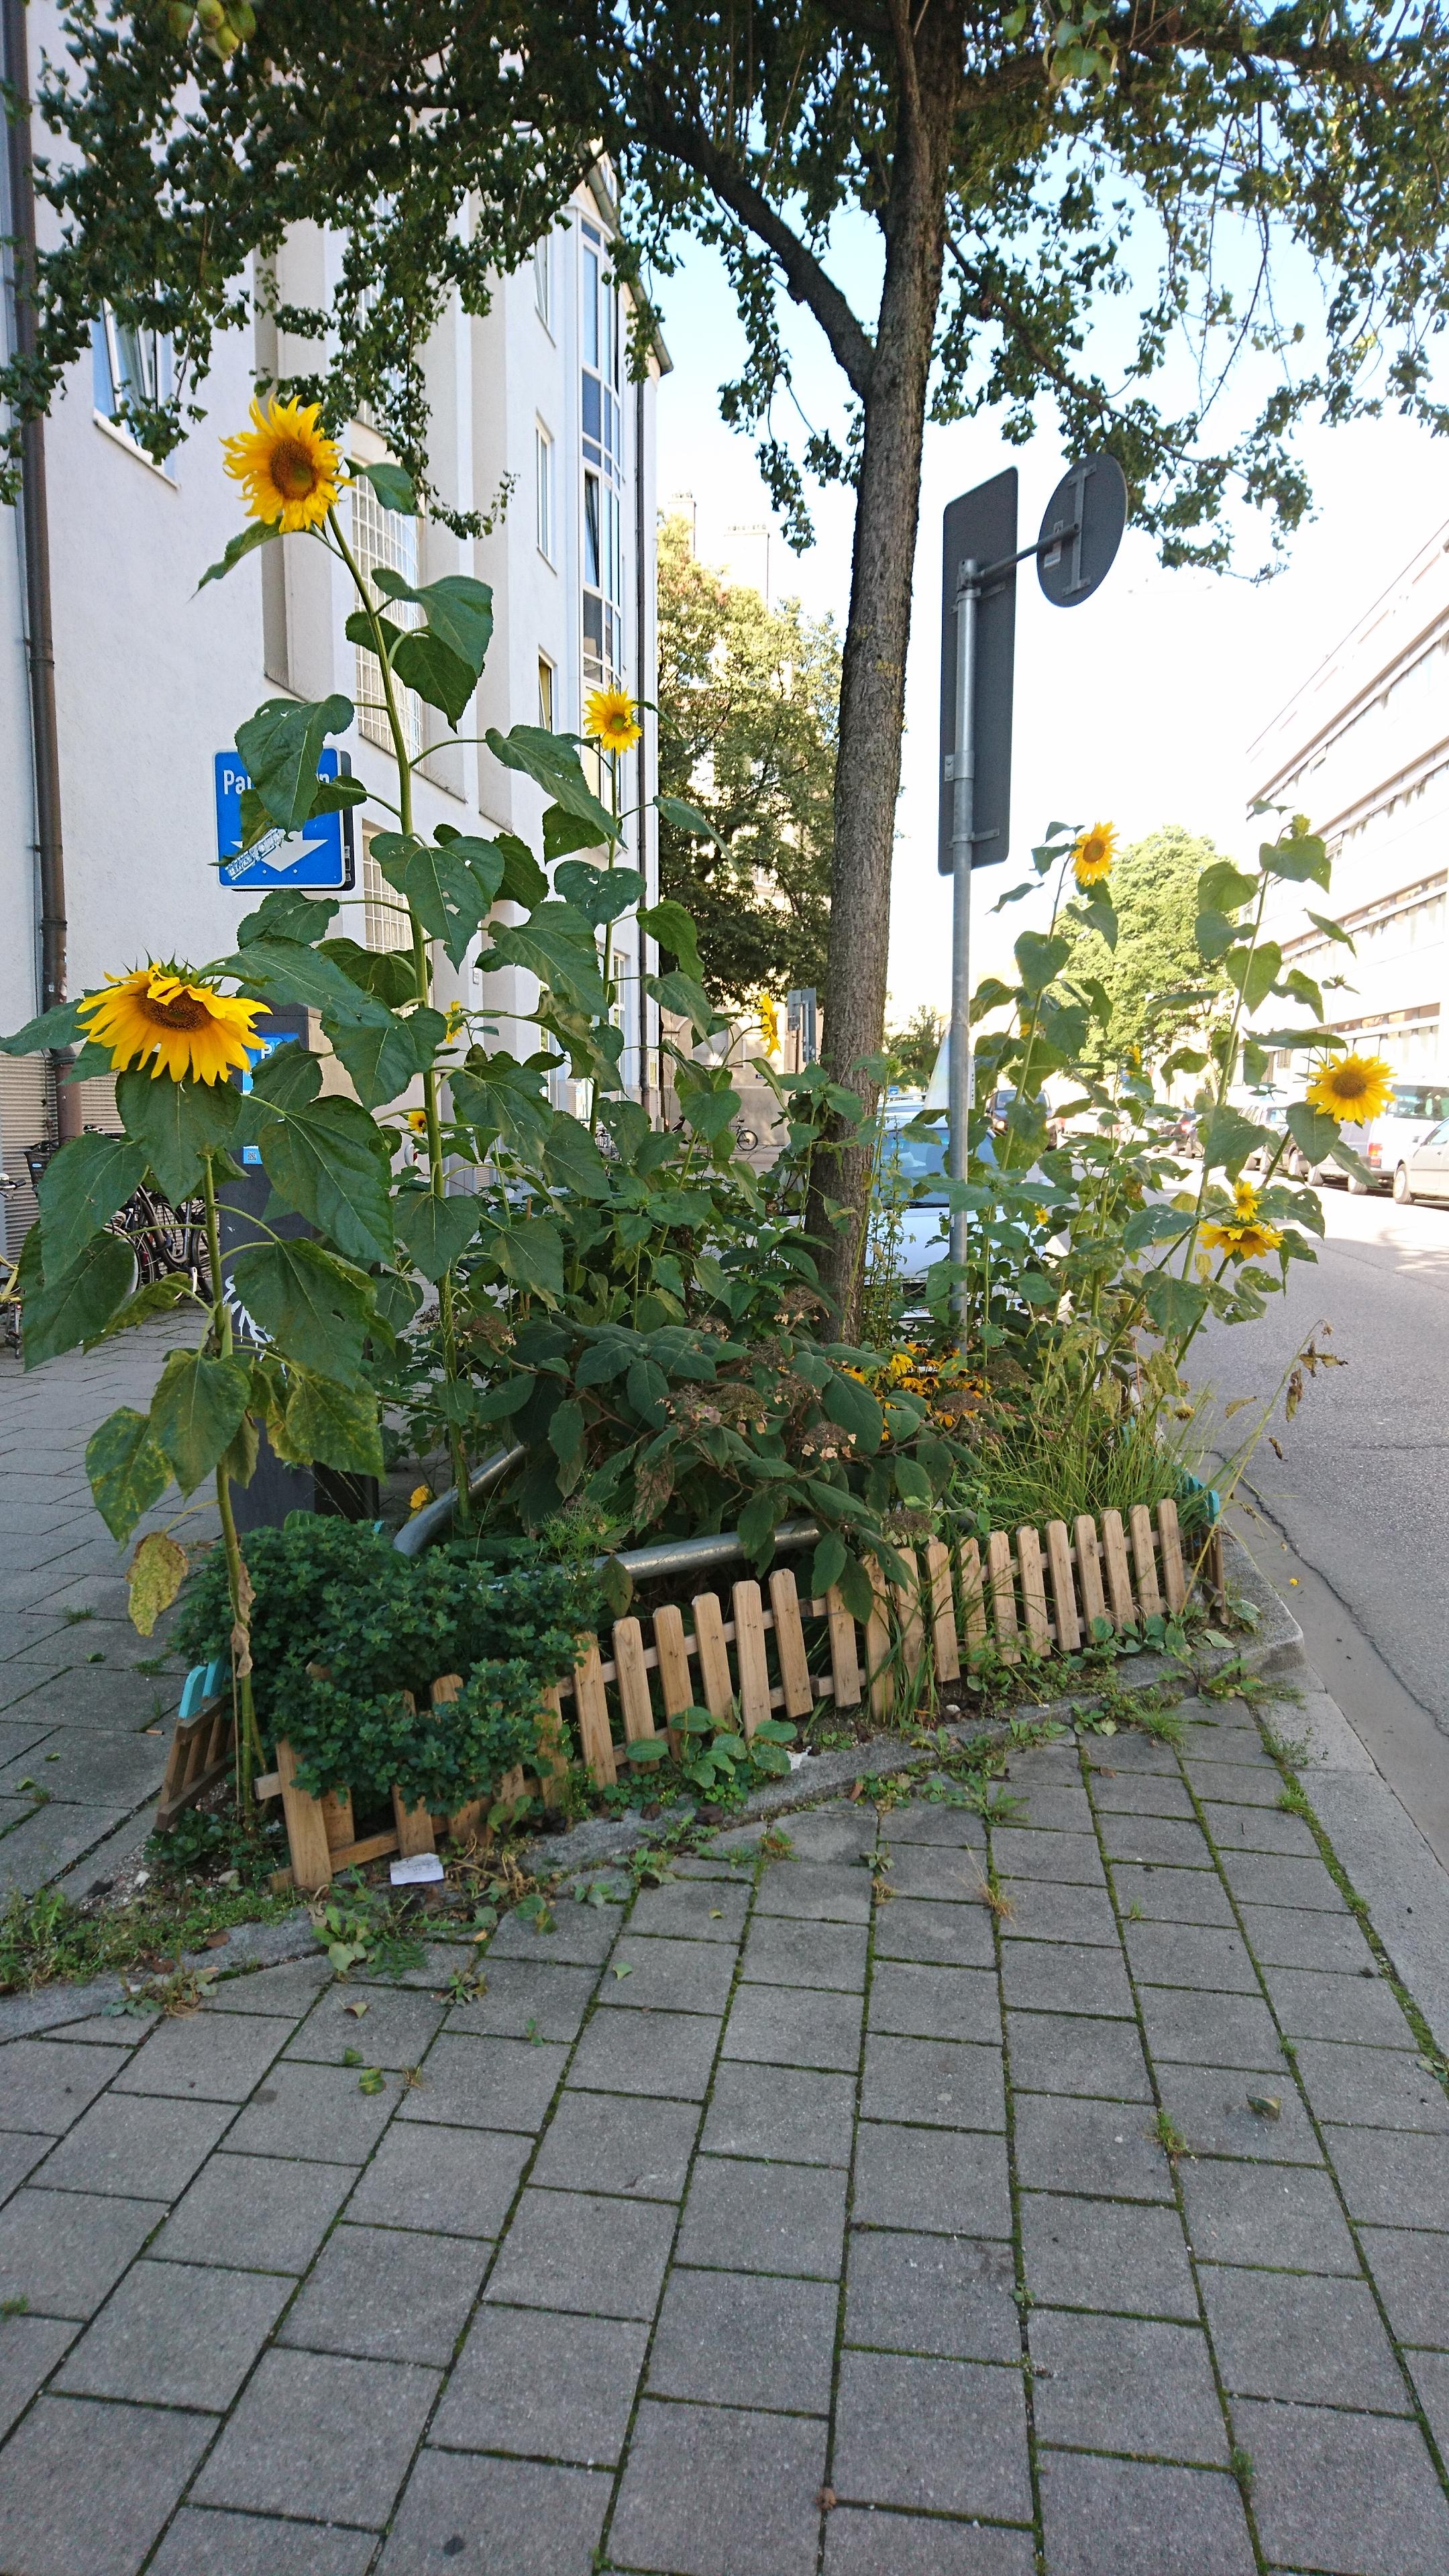 #Urbangardening as it's best 🌻

#Sonnenblumen #münchen